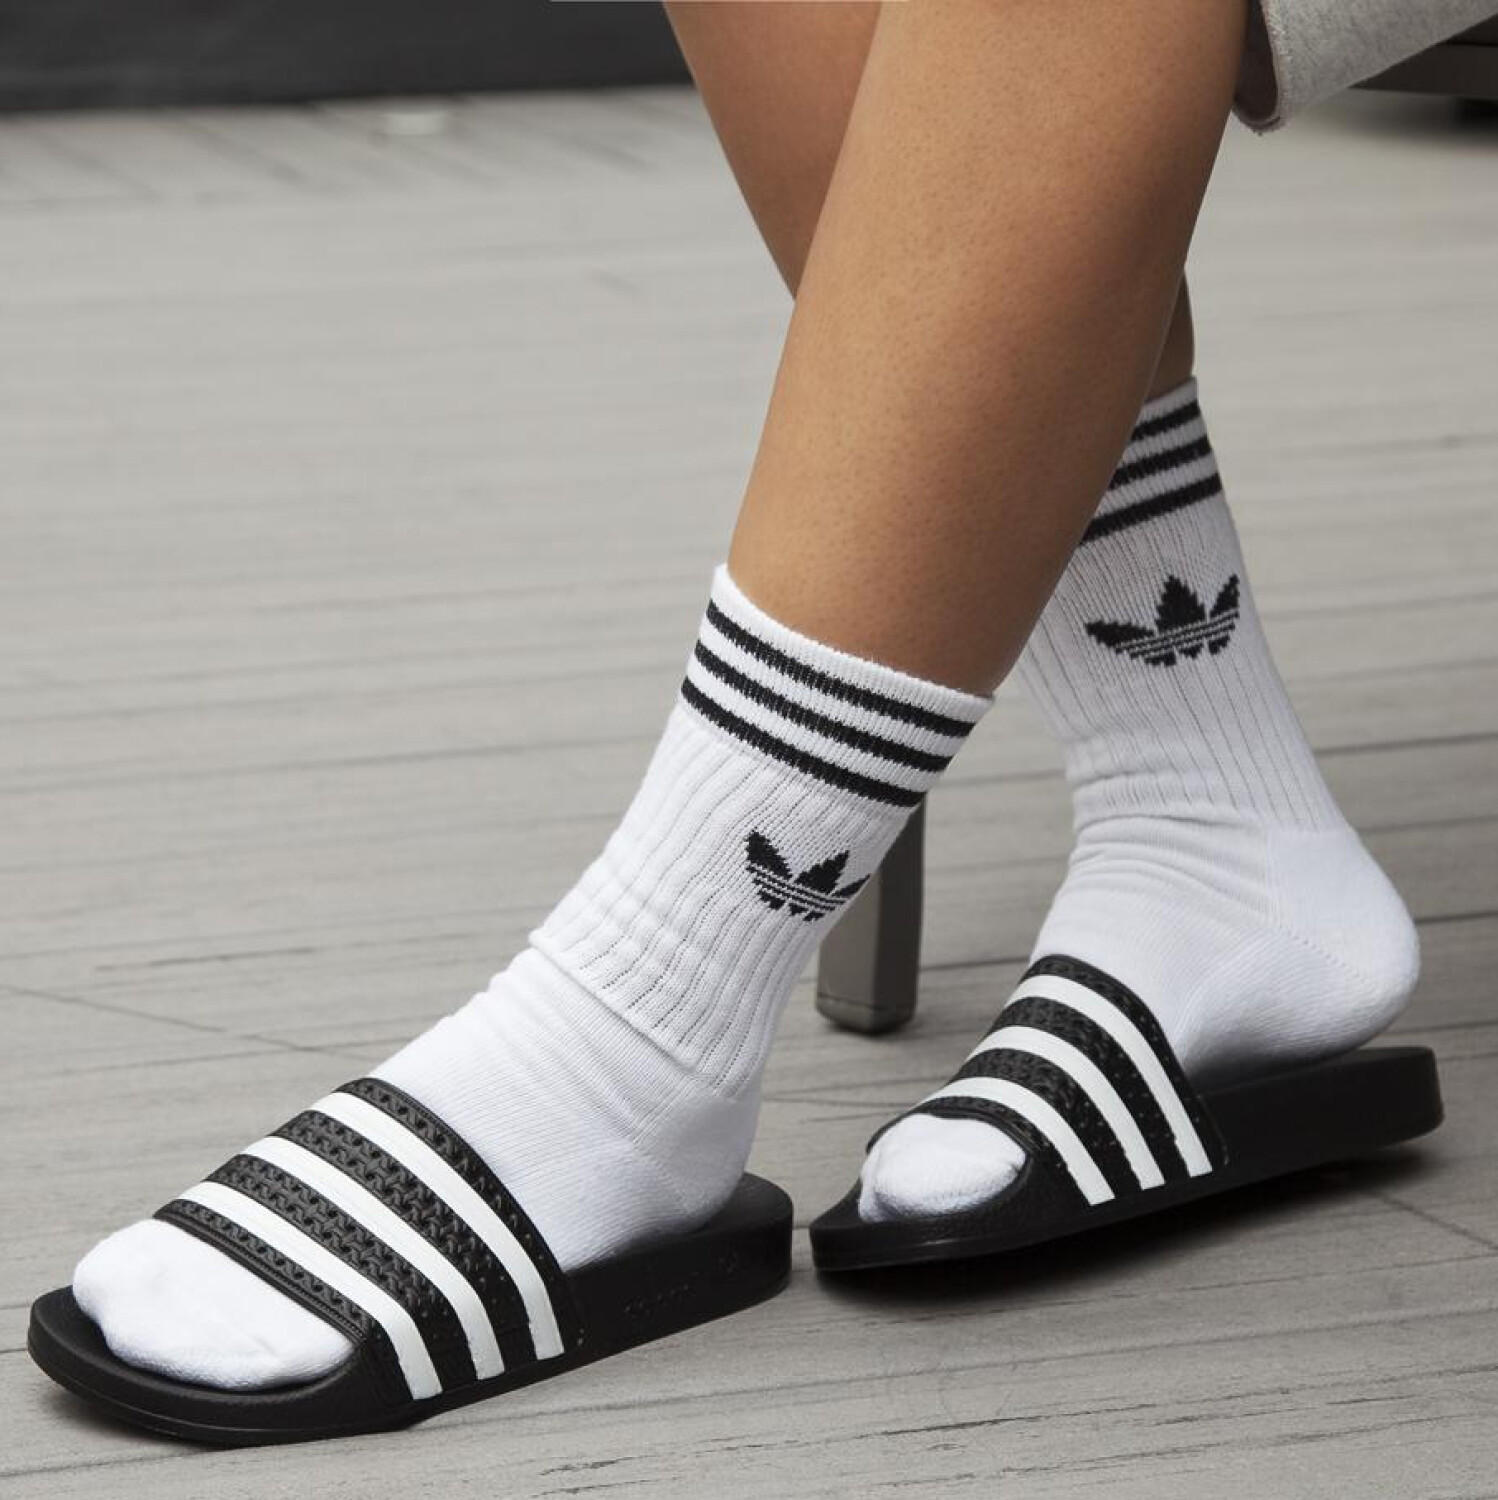 Adidas tiene las chanclas perfectas para el verano por de 20€